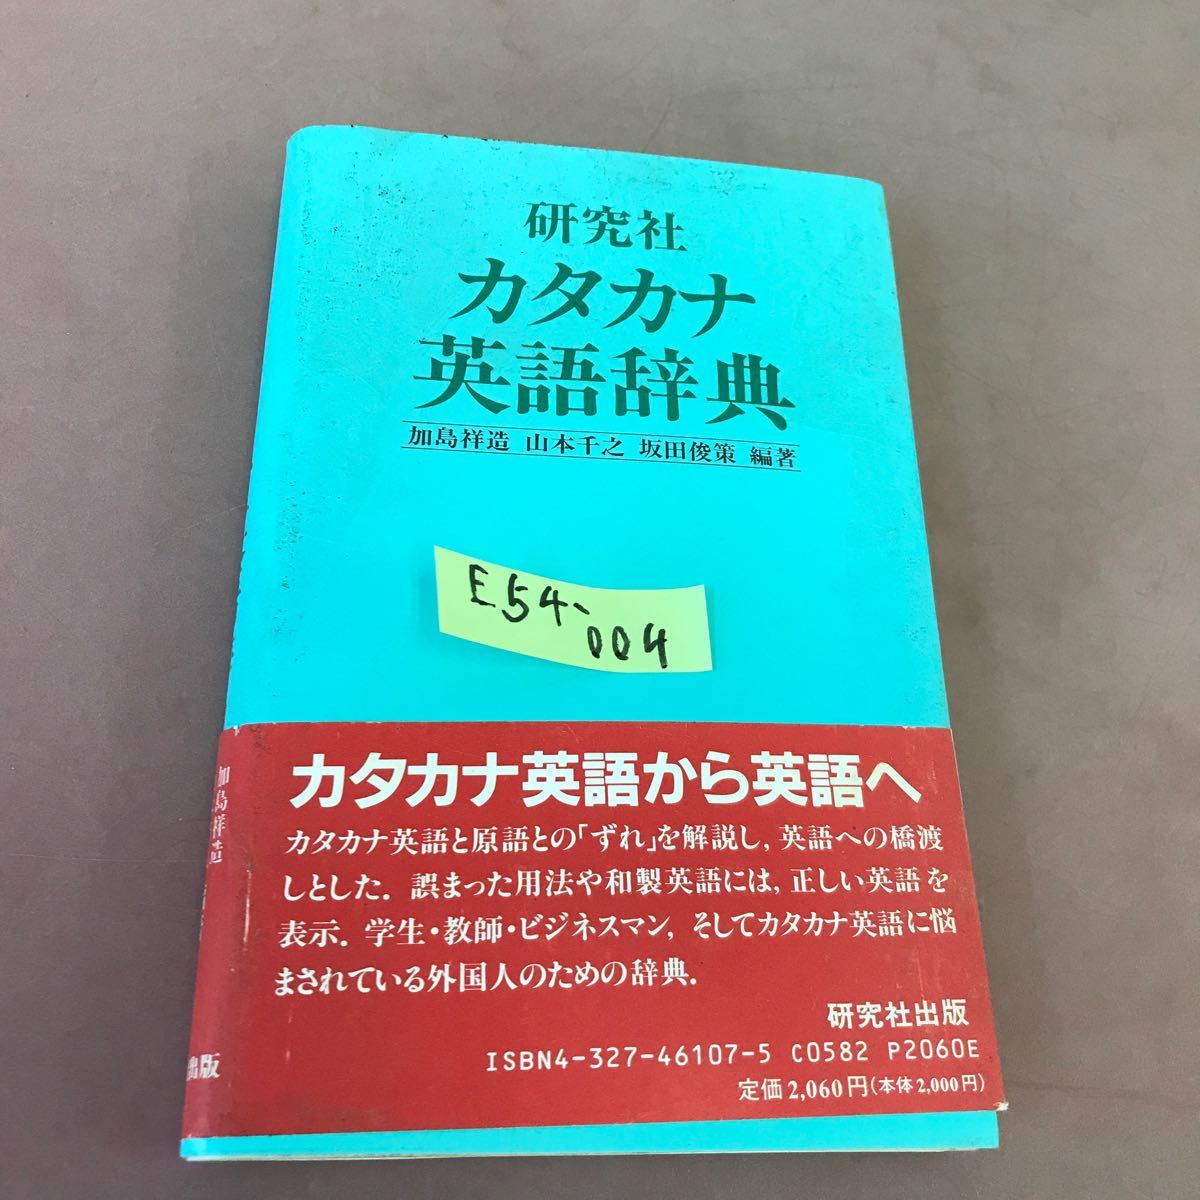 E54-004 研究社 カタカナ英語辞典 _画像1